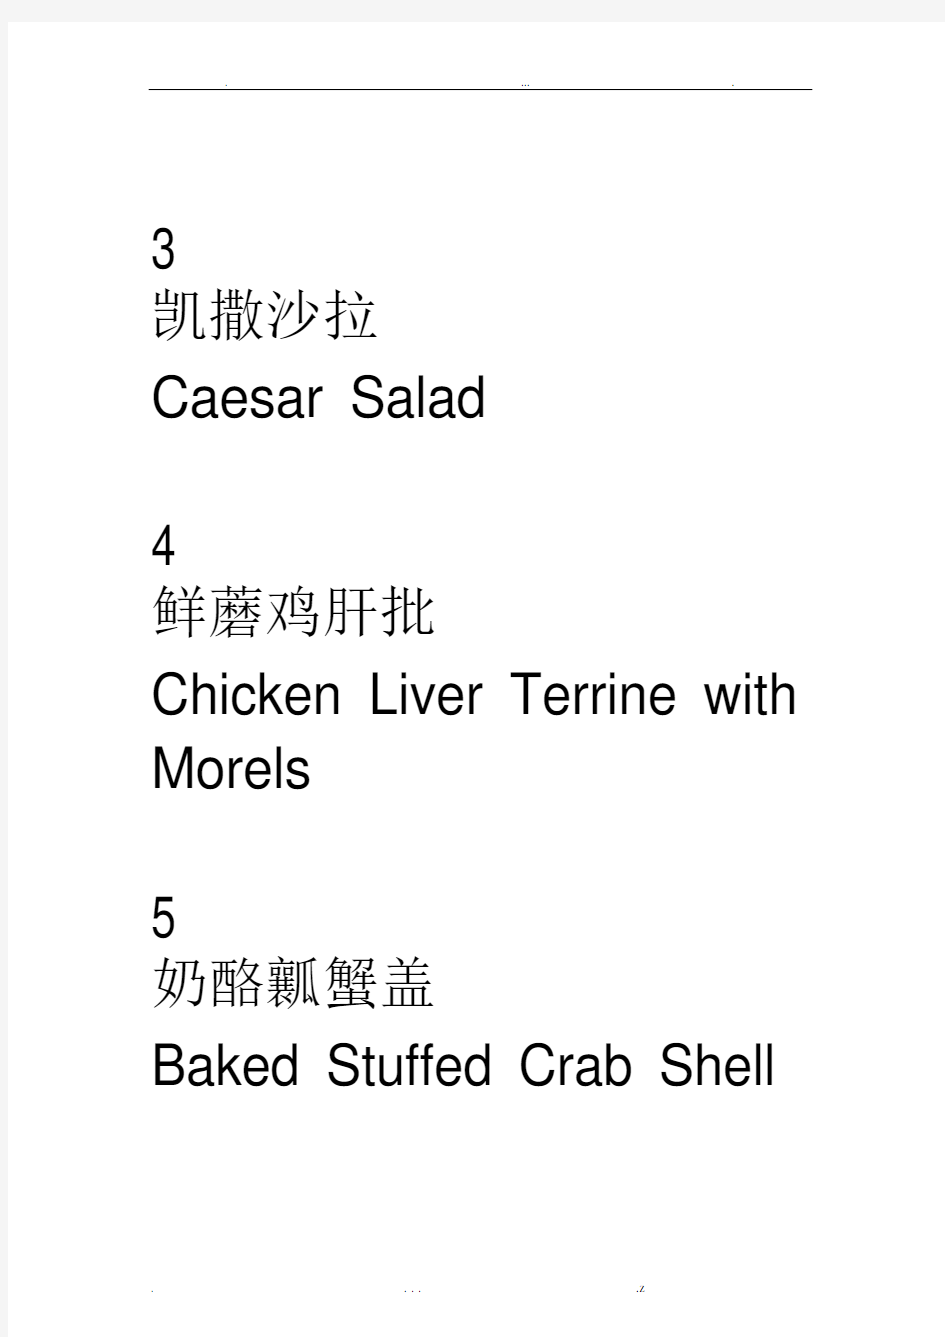 西餐菜单中英文对照